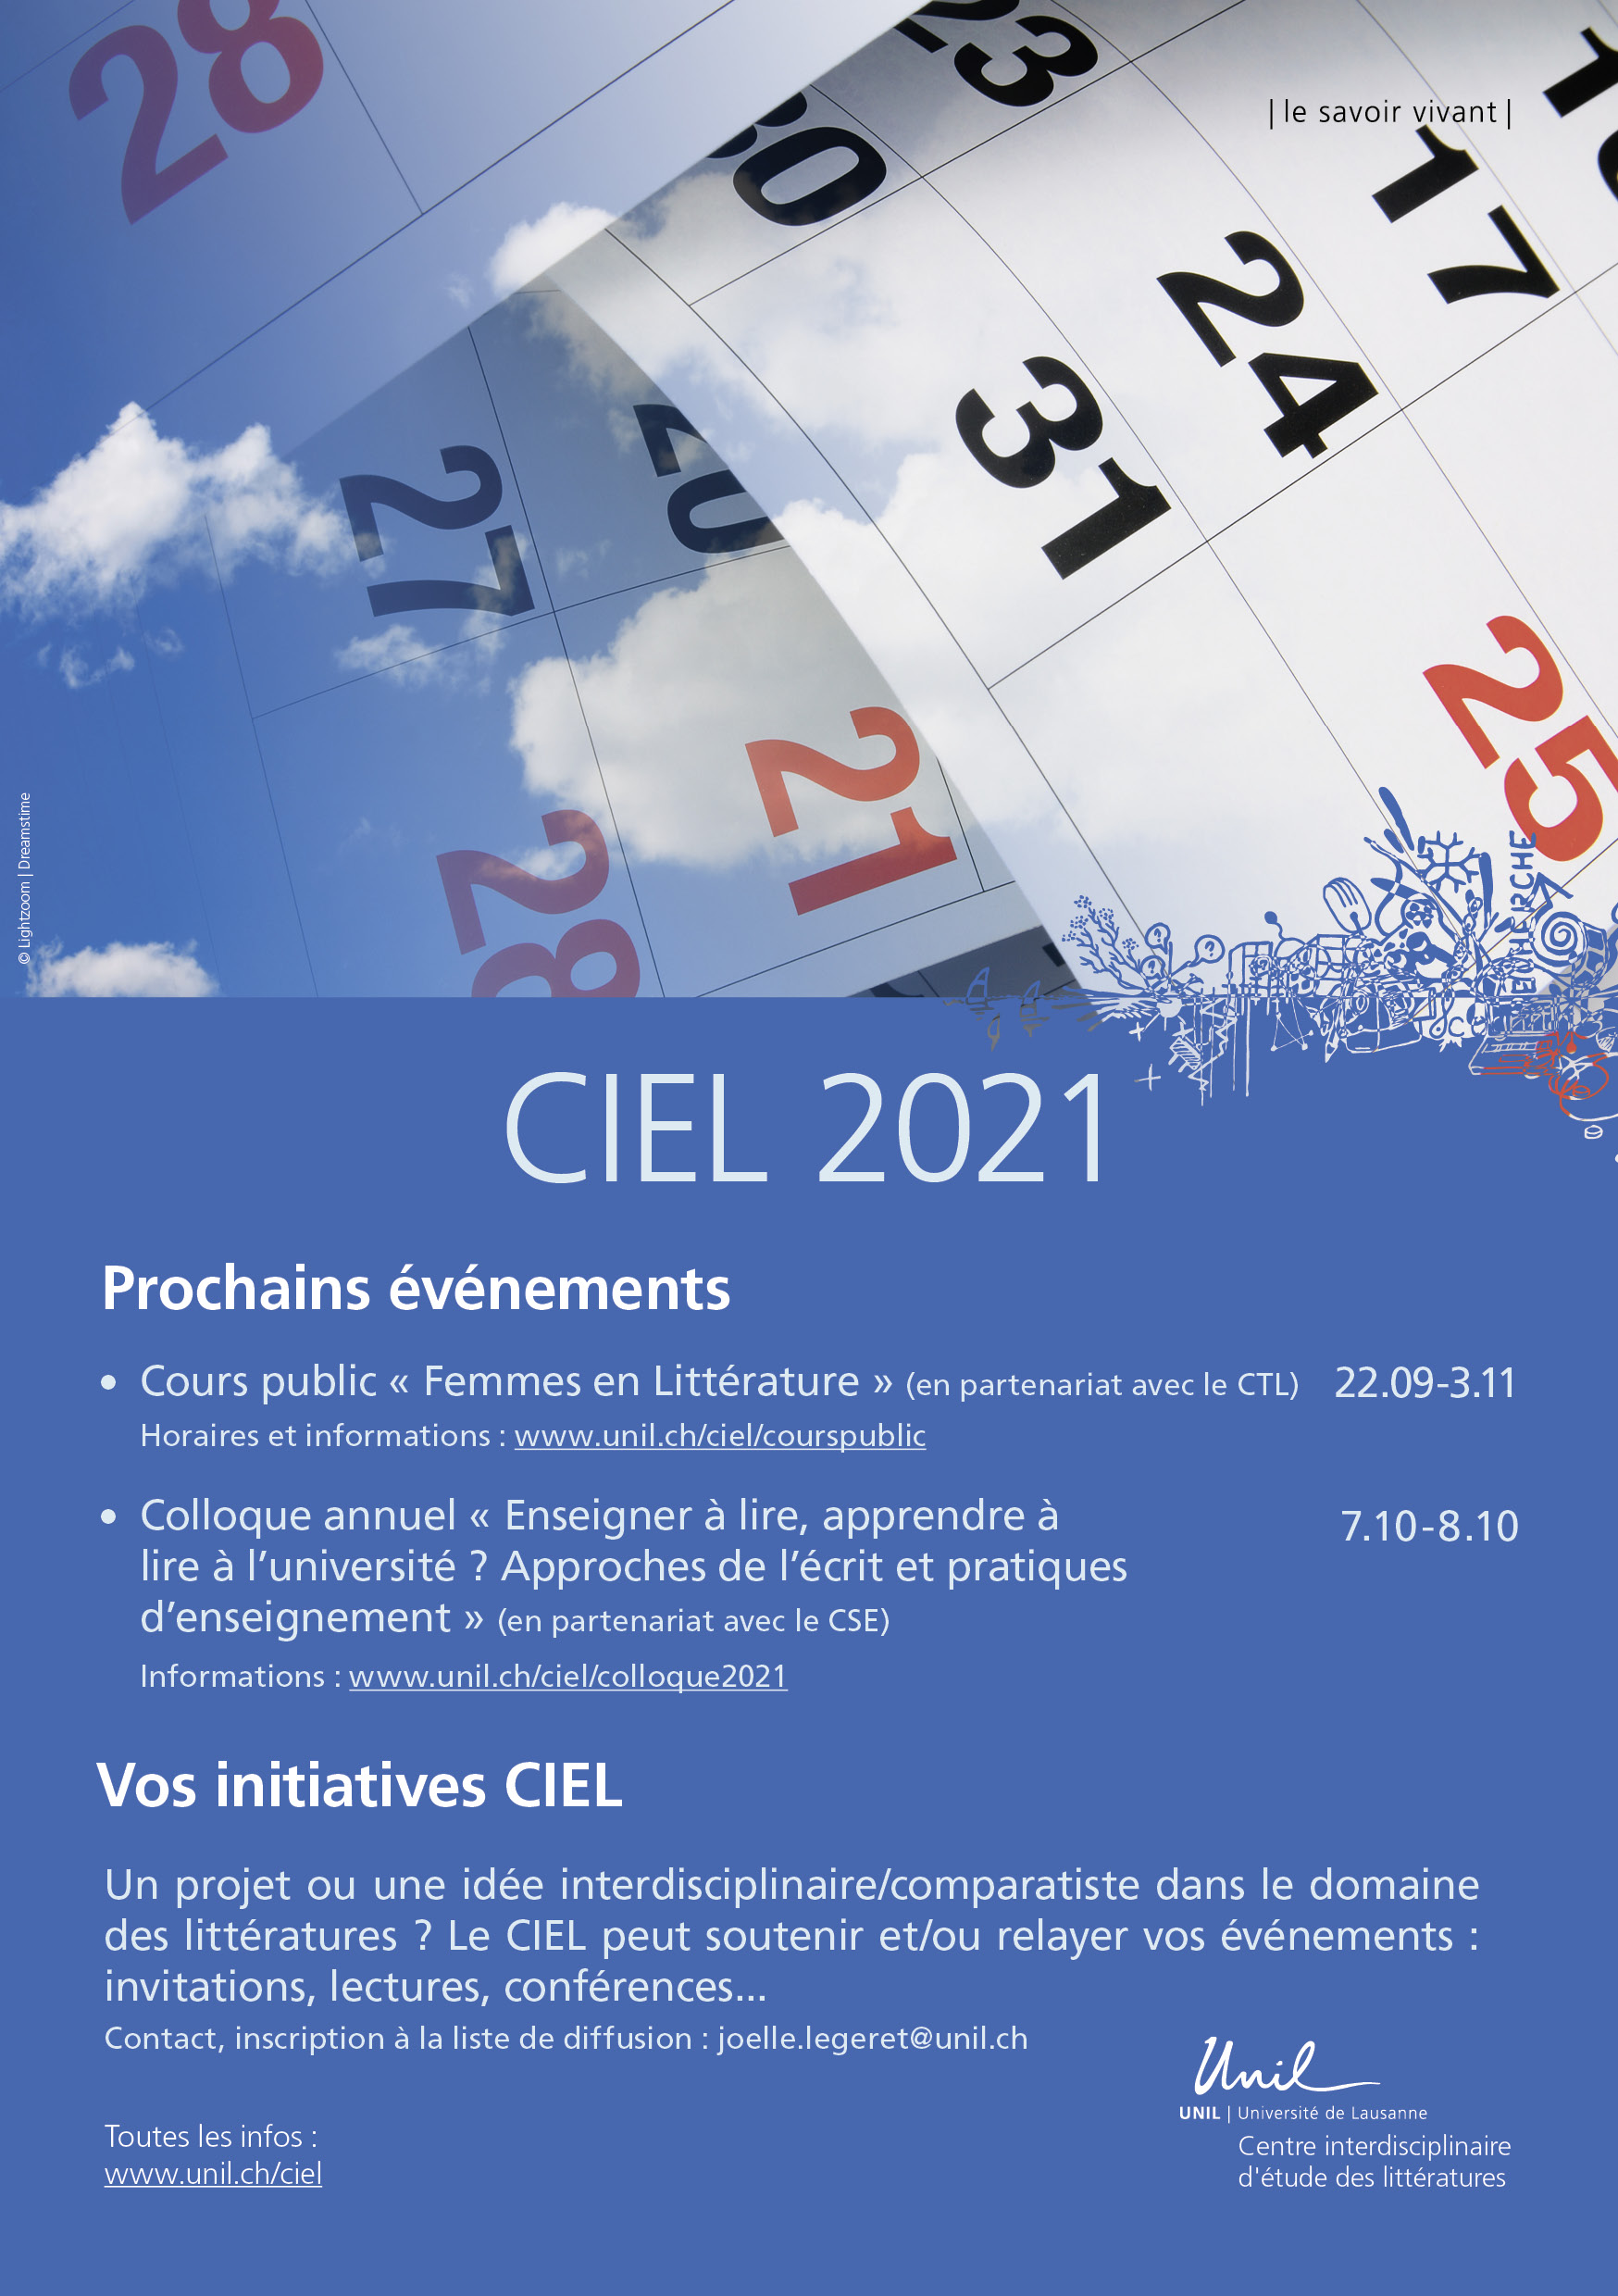 CIEL 2021 - flyer_recto_Vdéf.jpg (CIEL 2021 - flyer_recto_Vdéf.jpg)